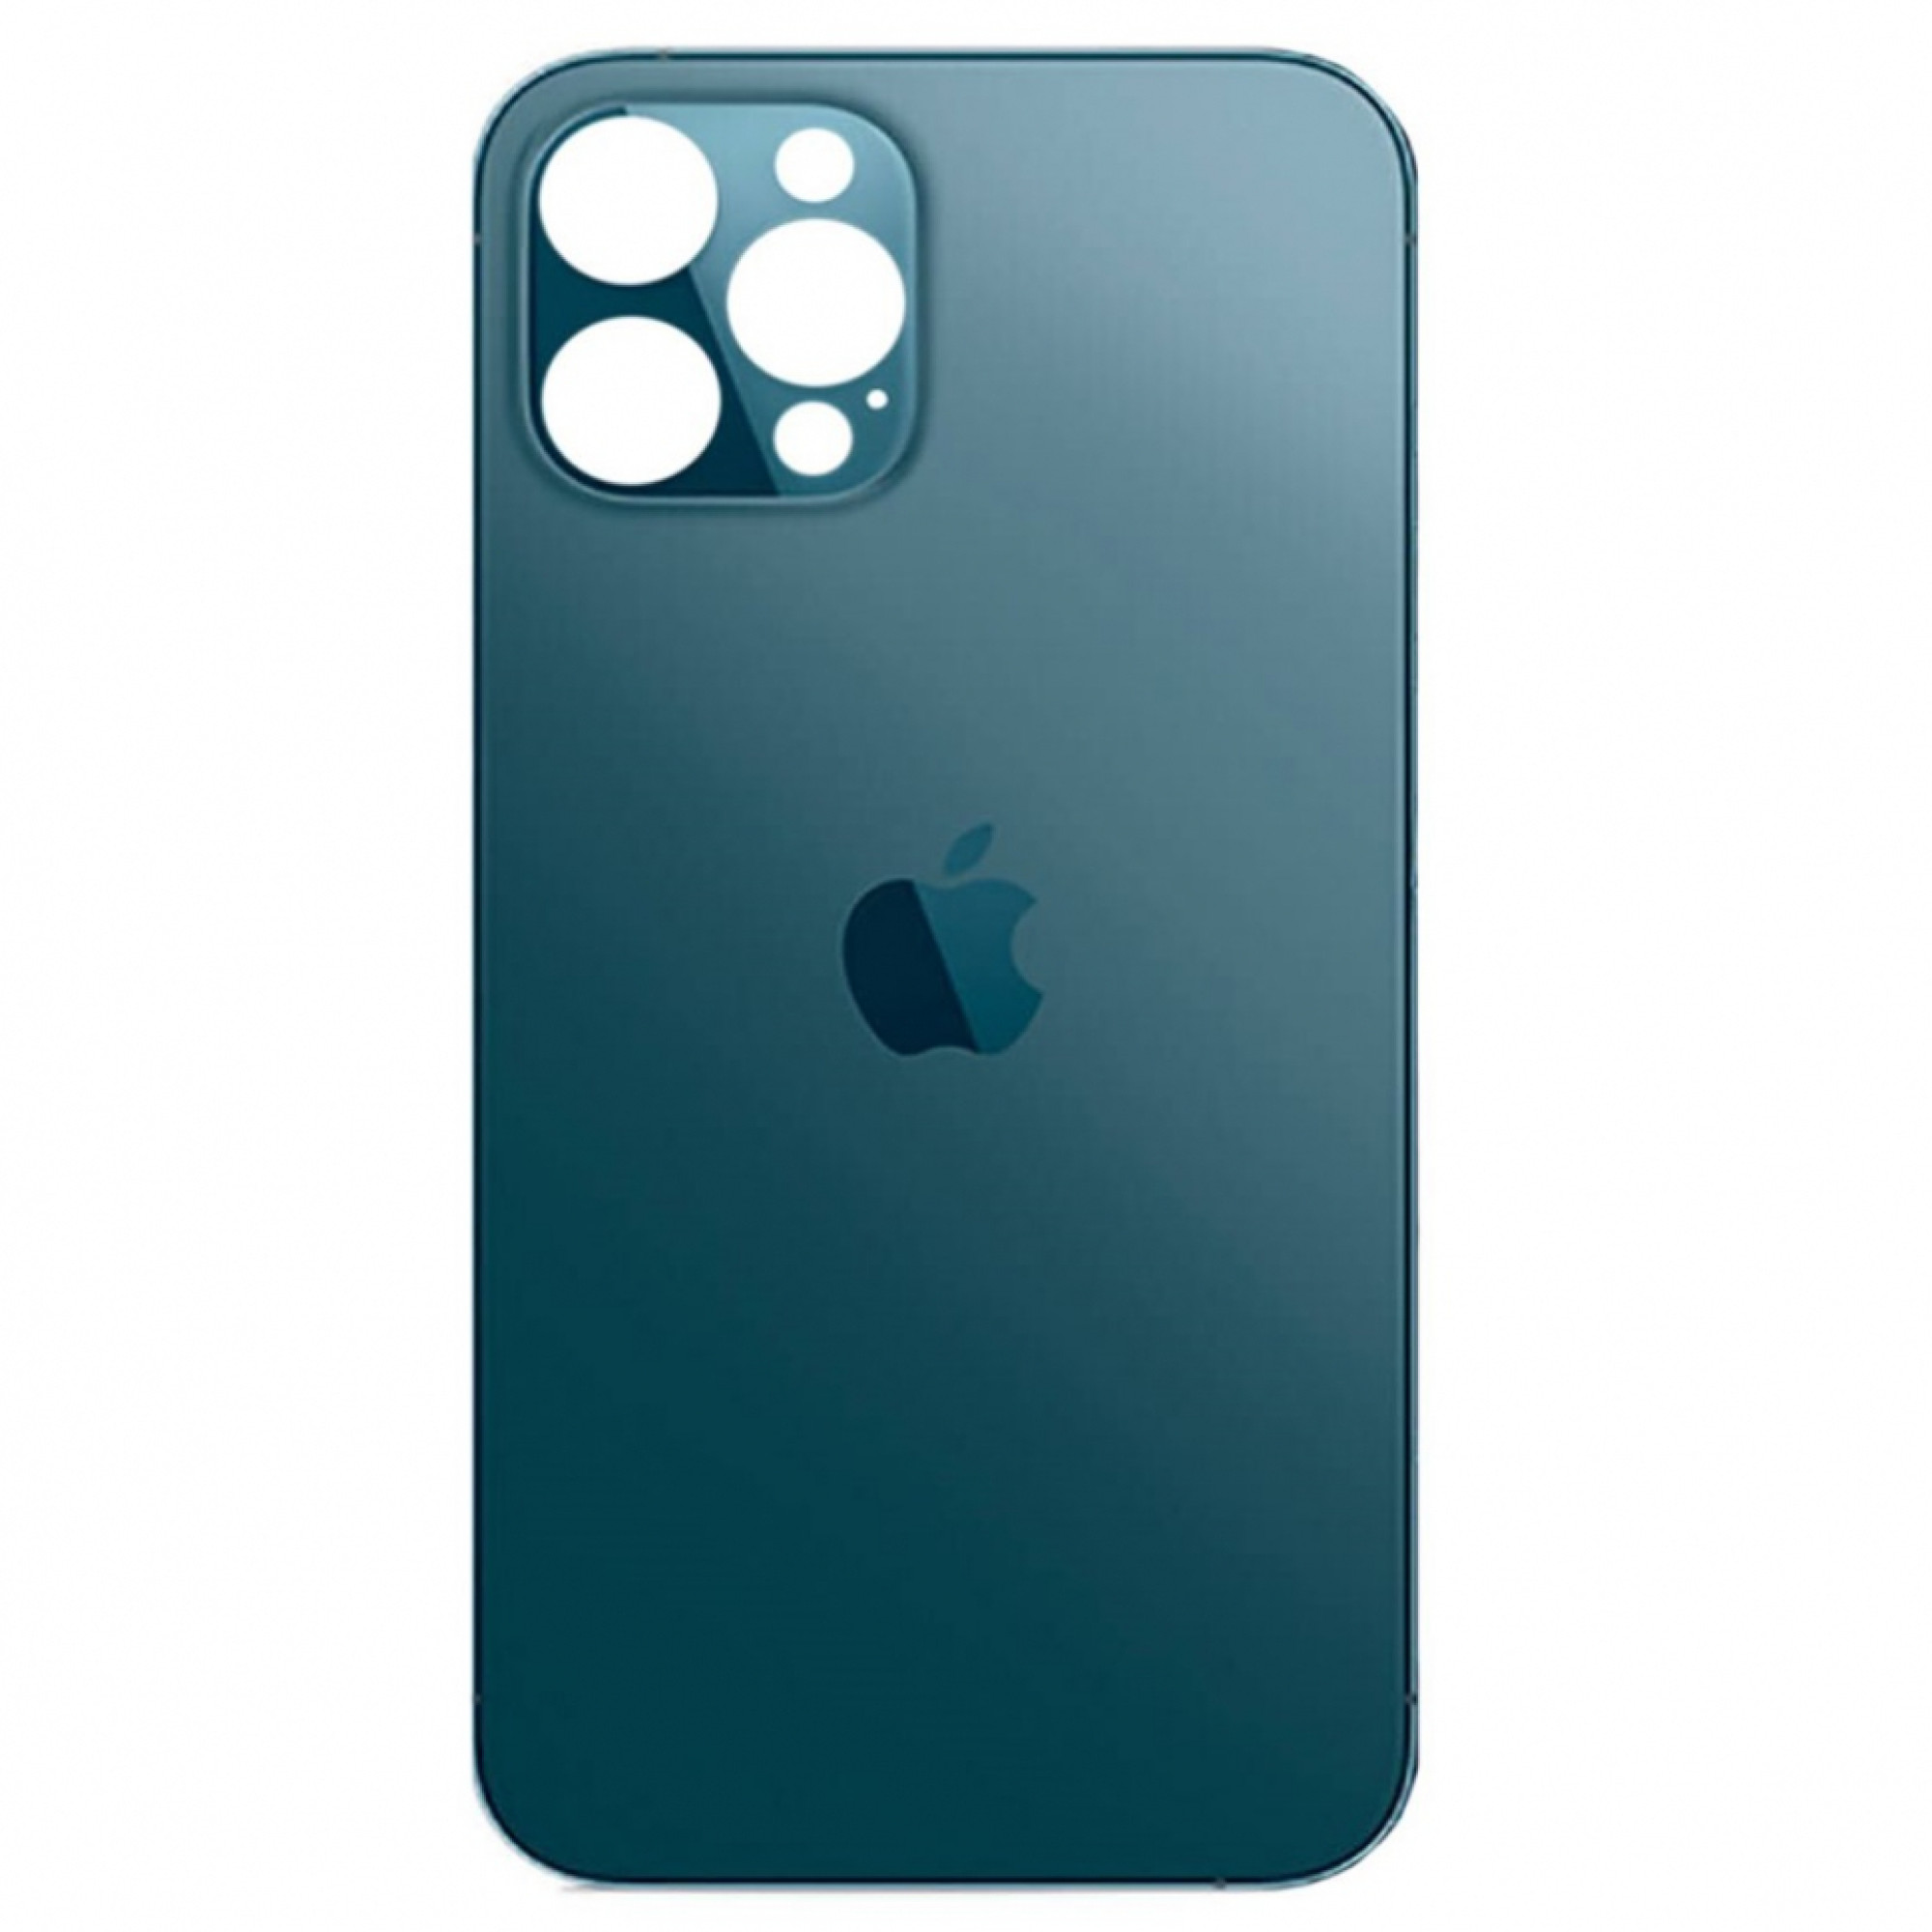 Задняя крышка для Apple iPhone 12 Pro Max (широкое отверстие под камеру), синяя - фото